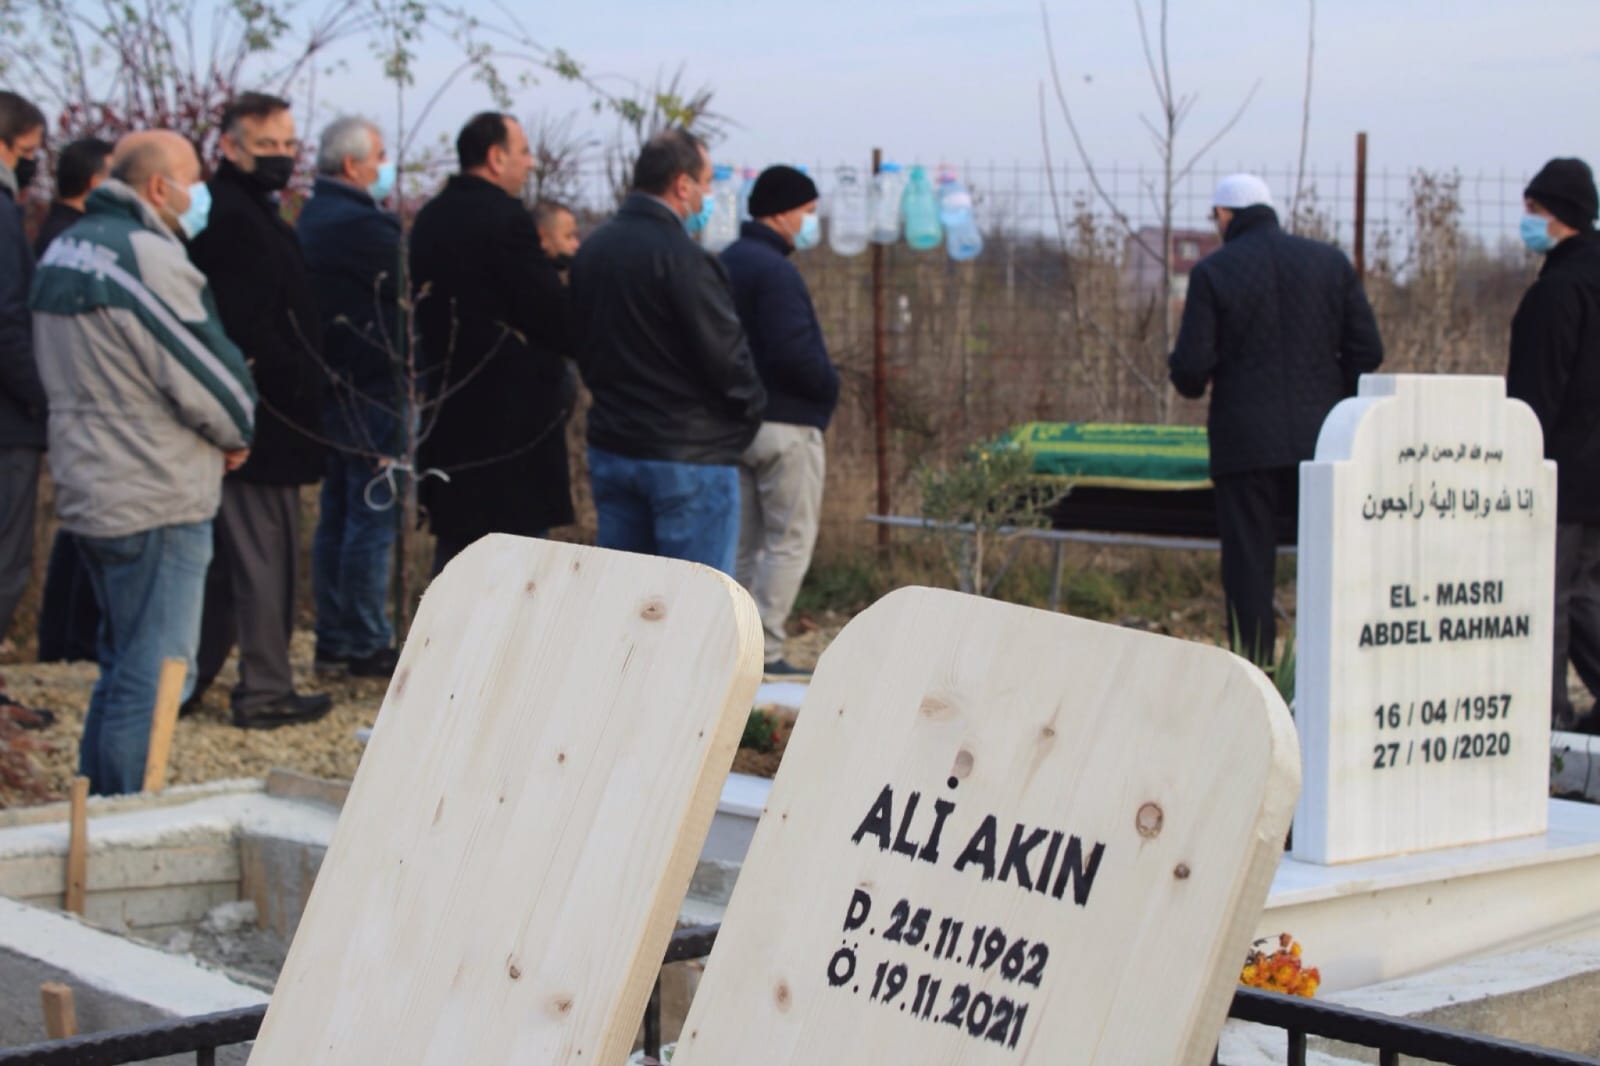 FETÖ'cü Ali Akın'ın öldüğü iddia edildi